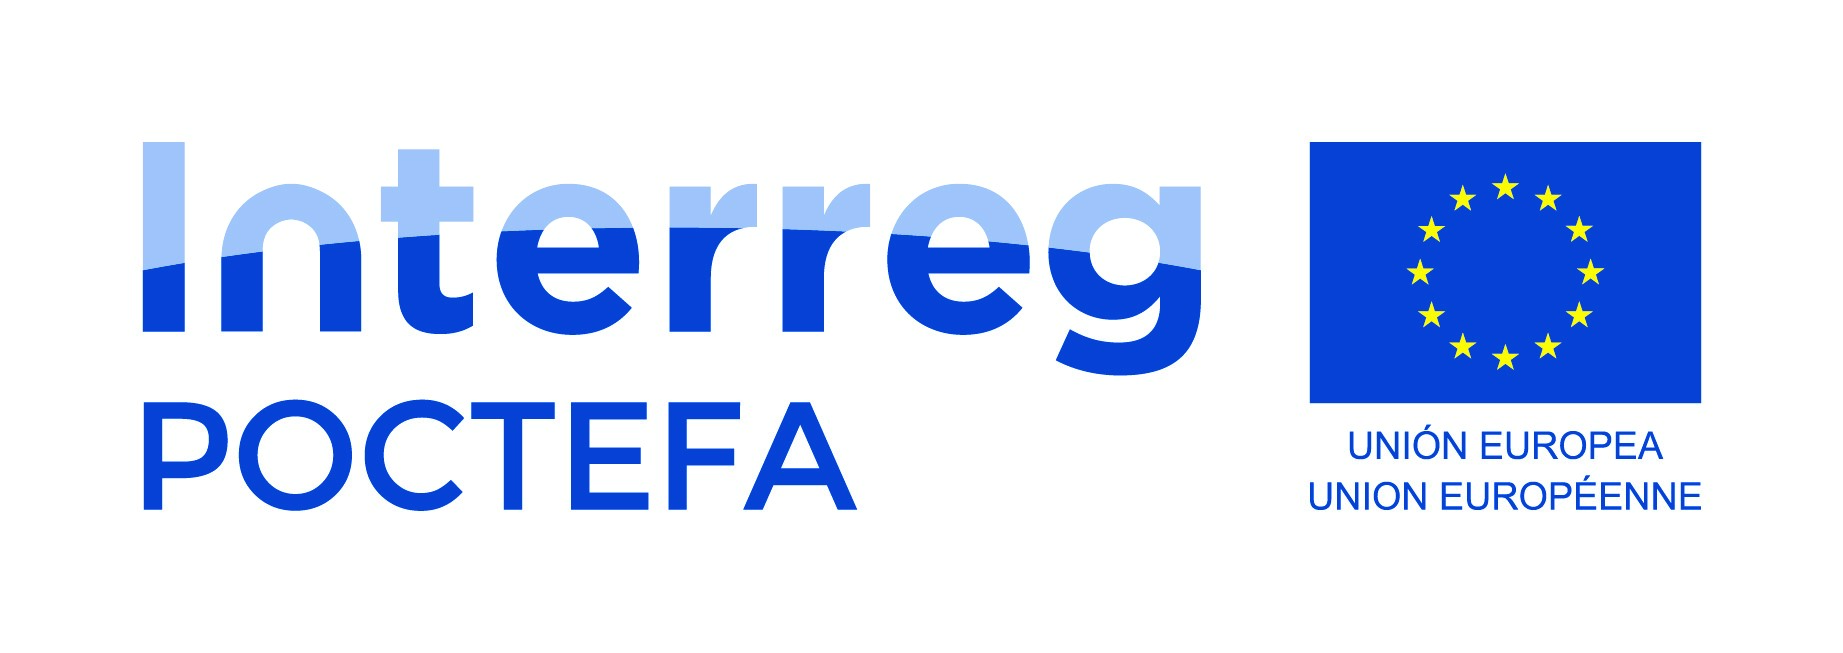 Logo del programa POCTEFA de Interreg